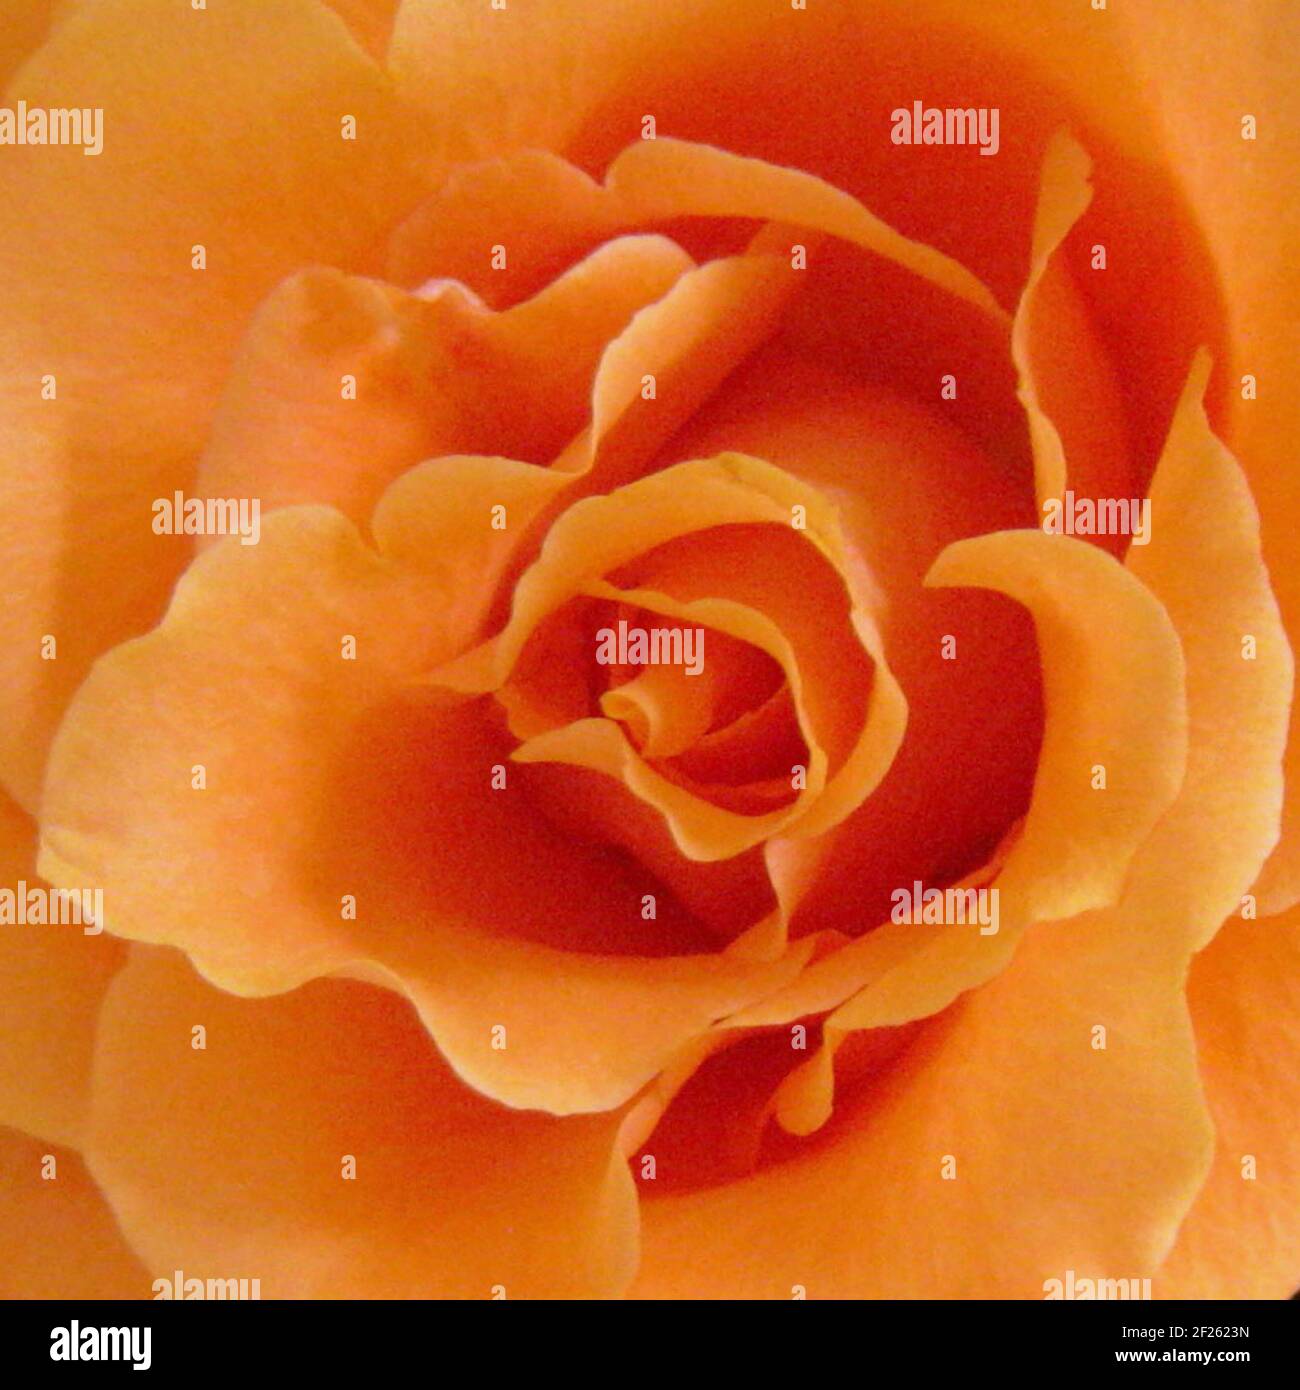 Wunderschöne Nahaufnahme einer orangefarbenen Bernsteinrose mit Platz zum Kopieren, um die Botschaft der Liebe zu vermitteln. Stockfoto